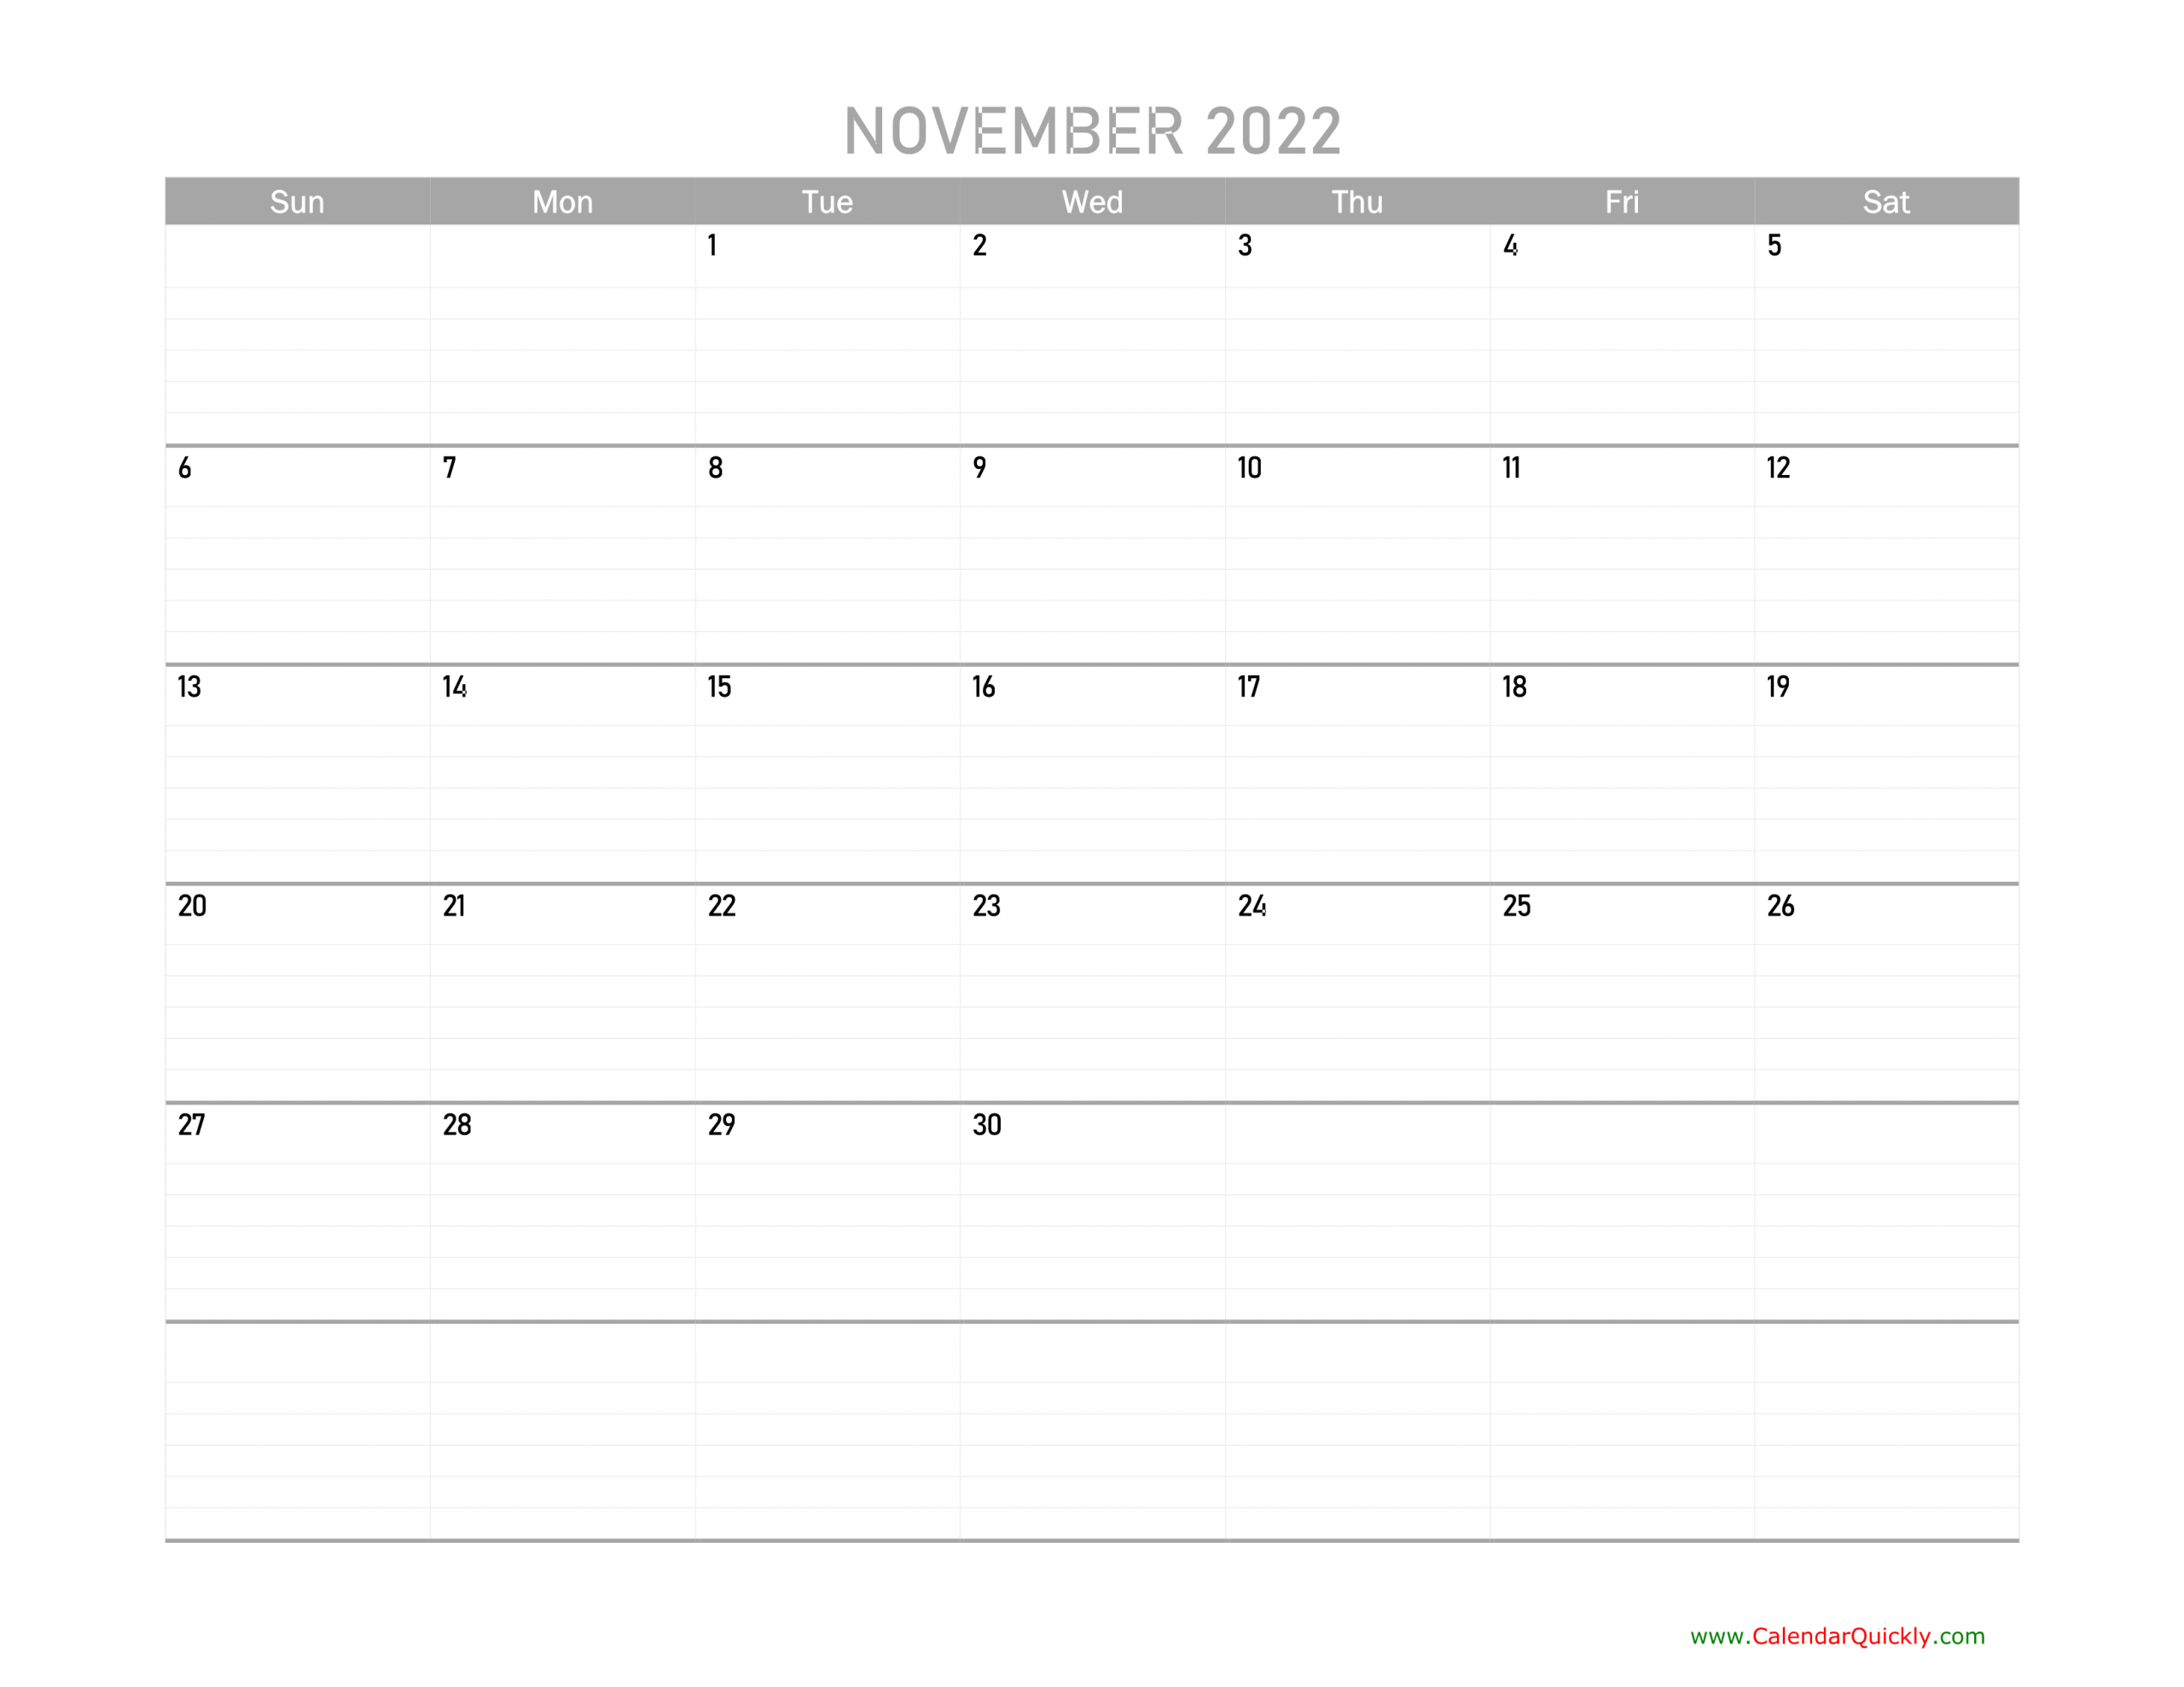 November Calendar 2022 Printable | Calendar Quickly